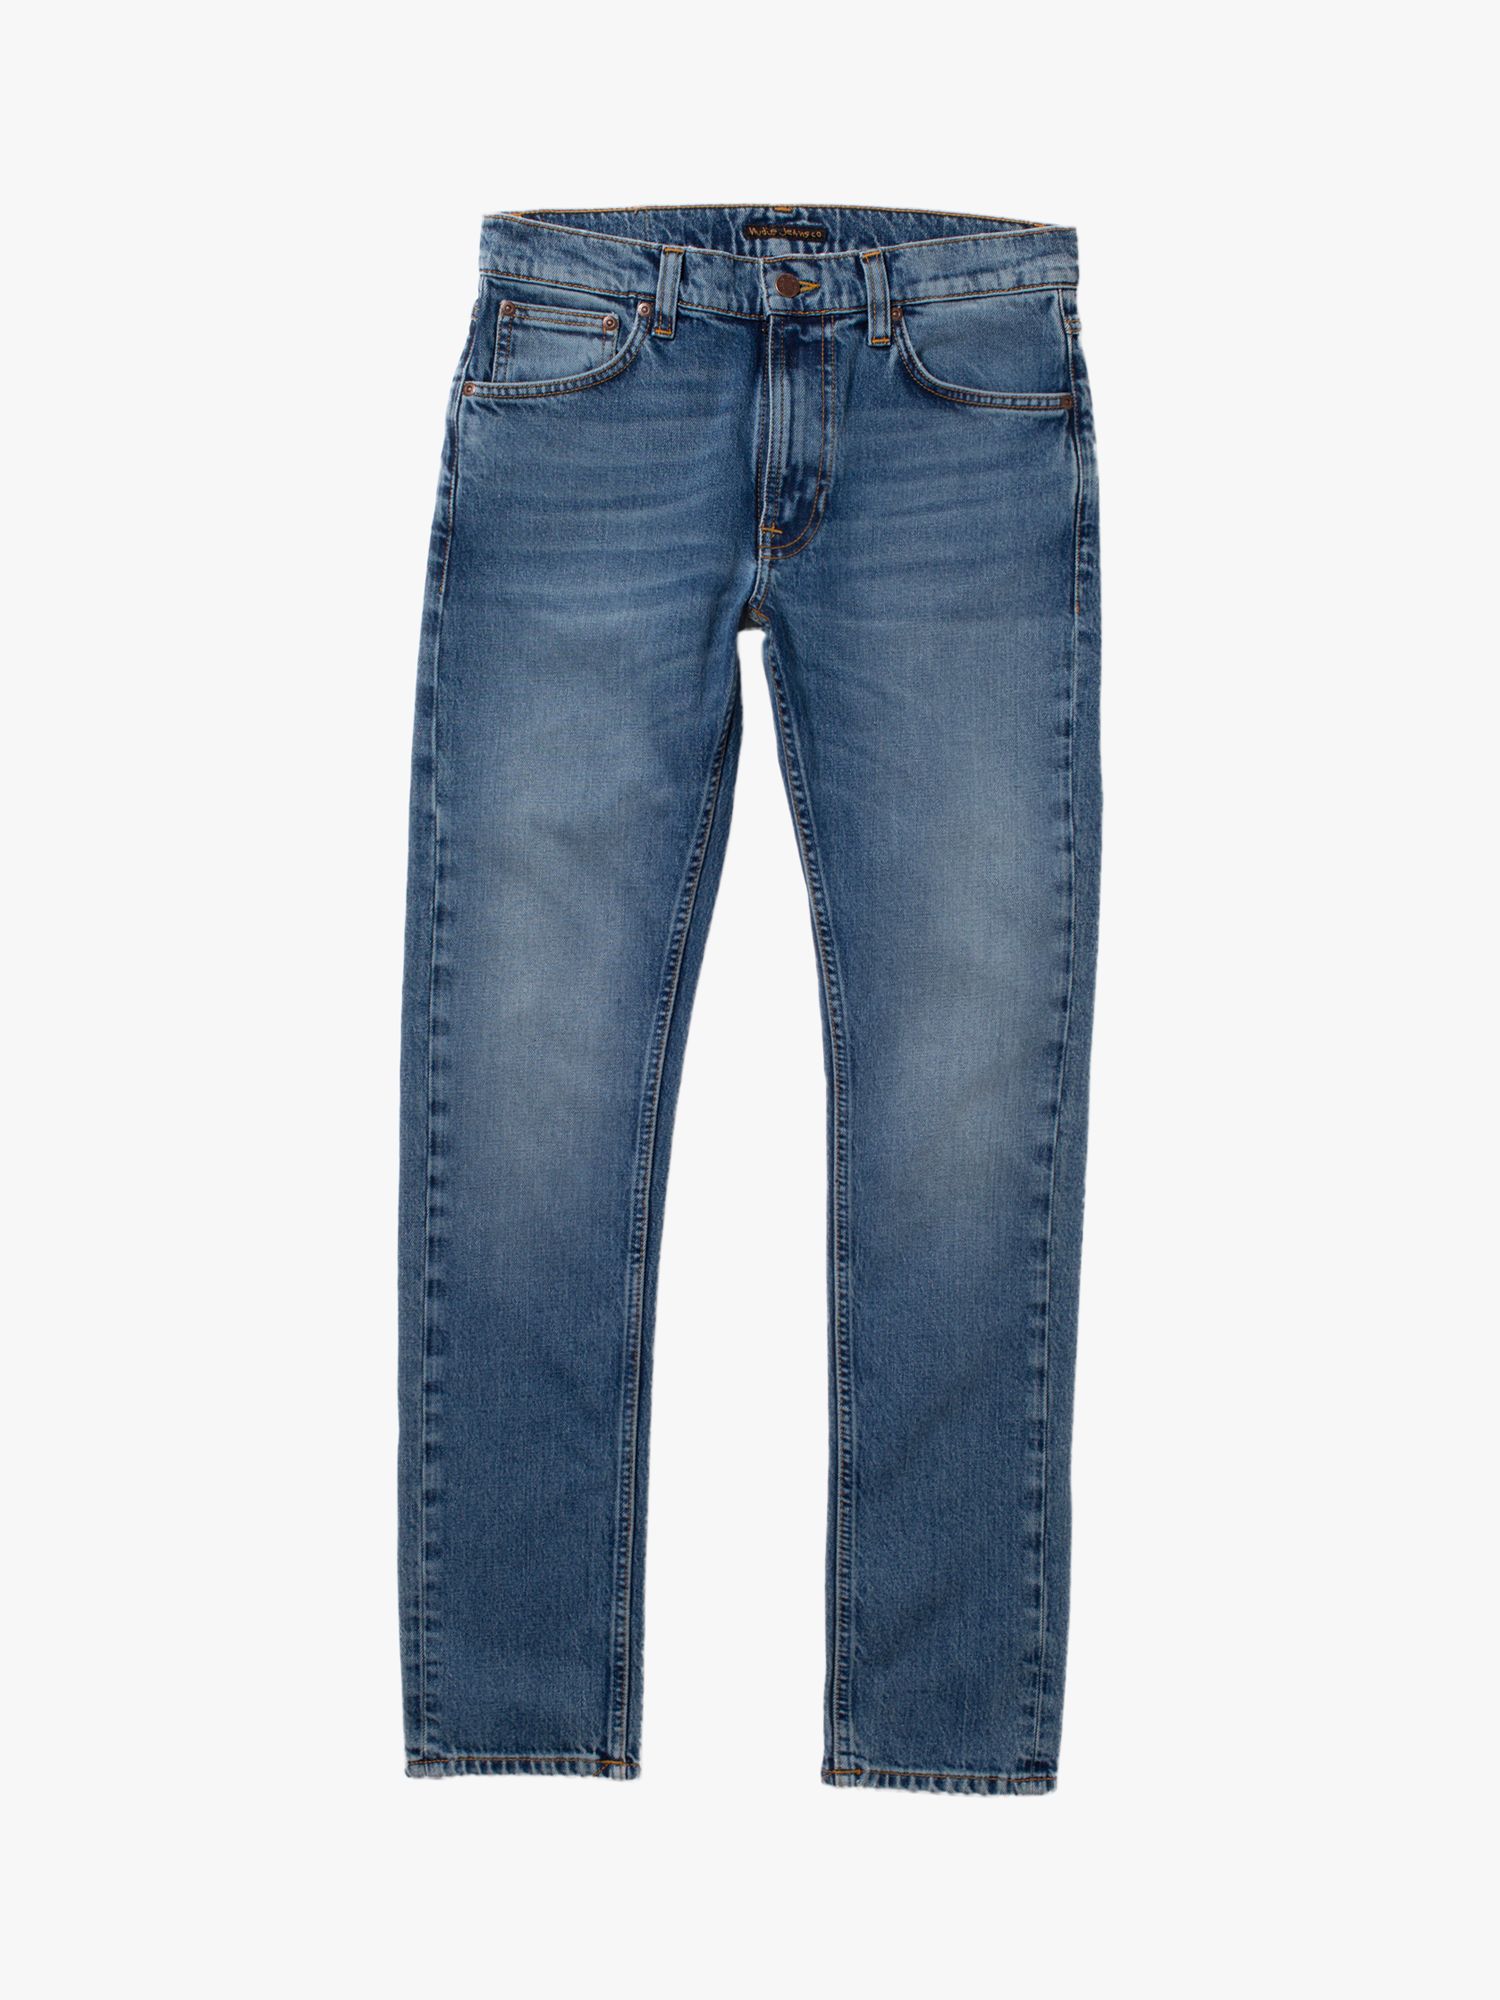 Nudie Jeans Slim Fit Lean Dean Jeans, Blue at John Lewis & Partners